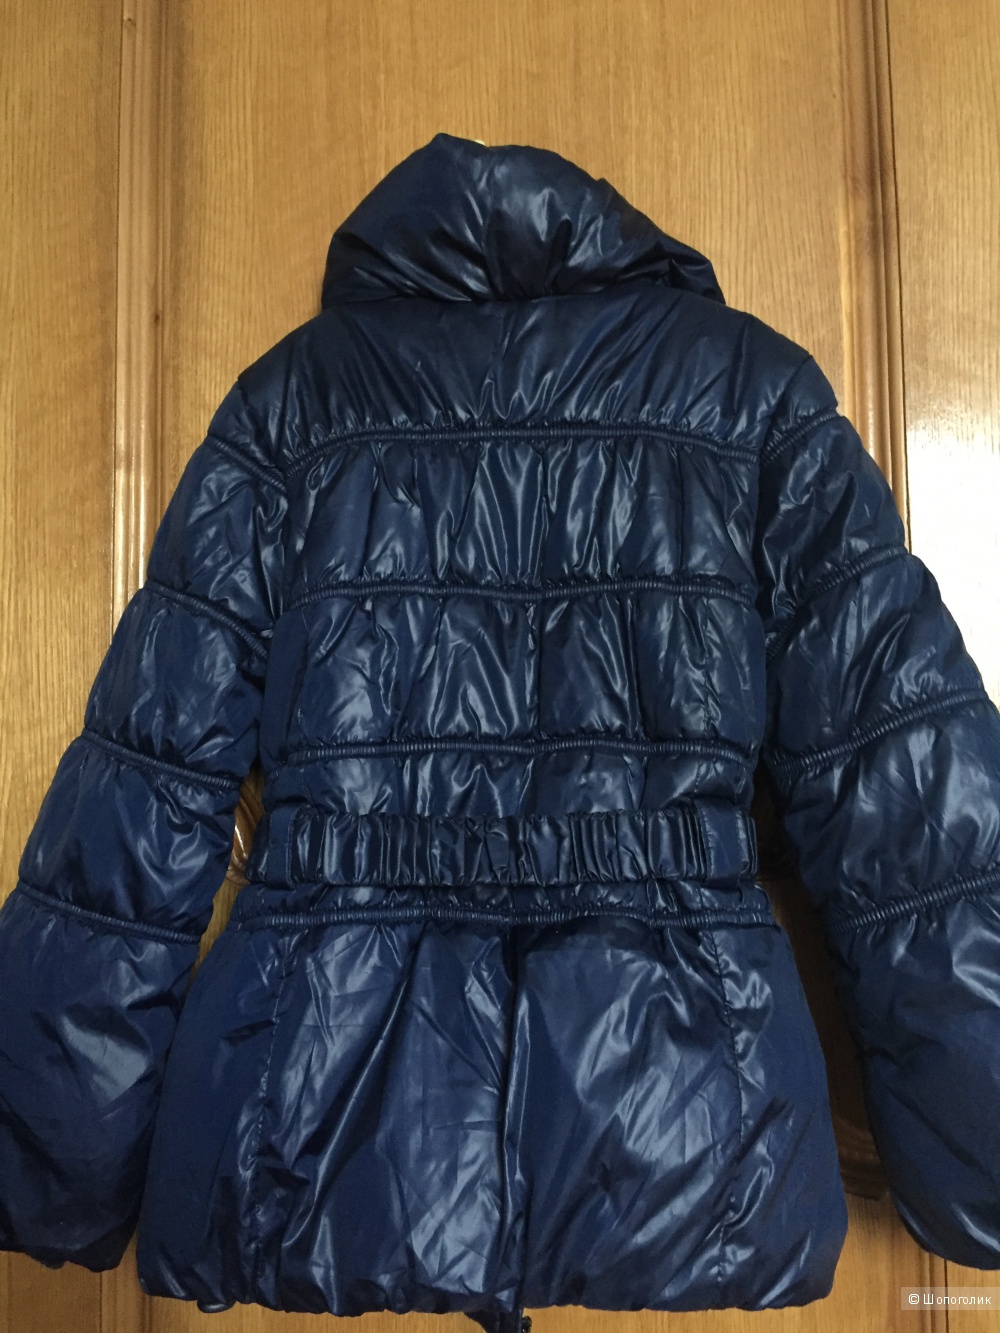 Теплая куртка ф.Mariquita 140-146 для девочки